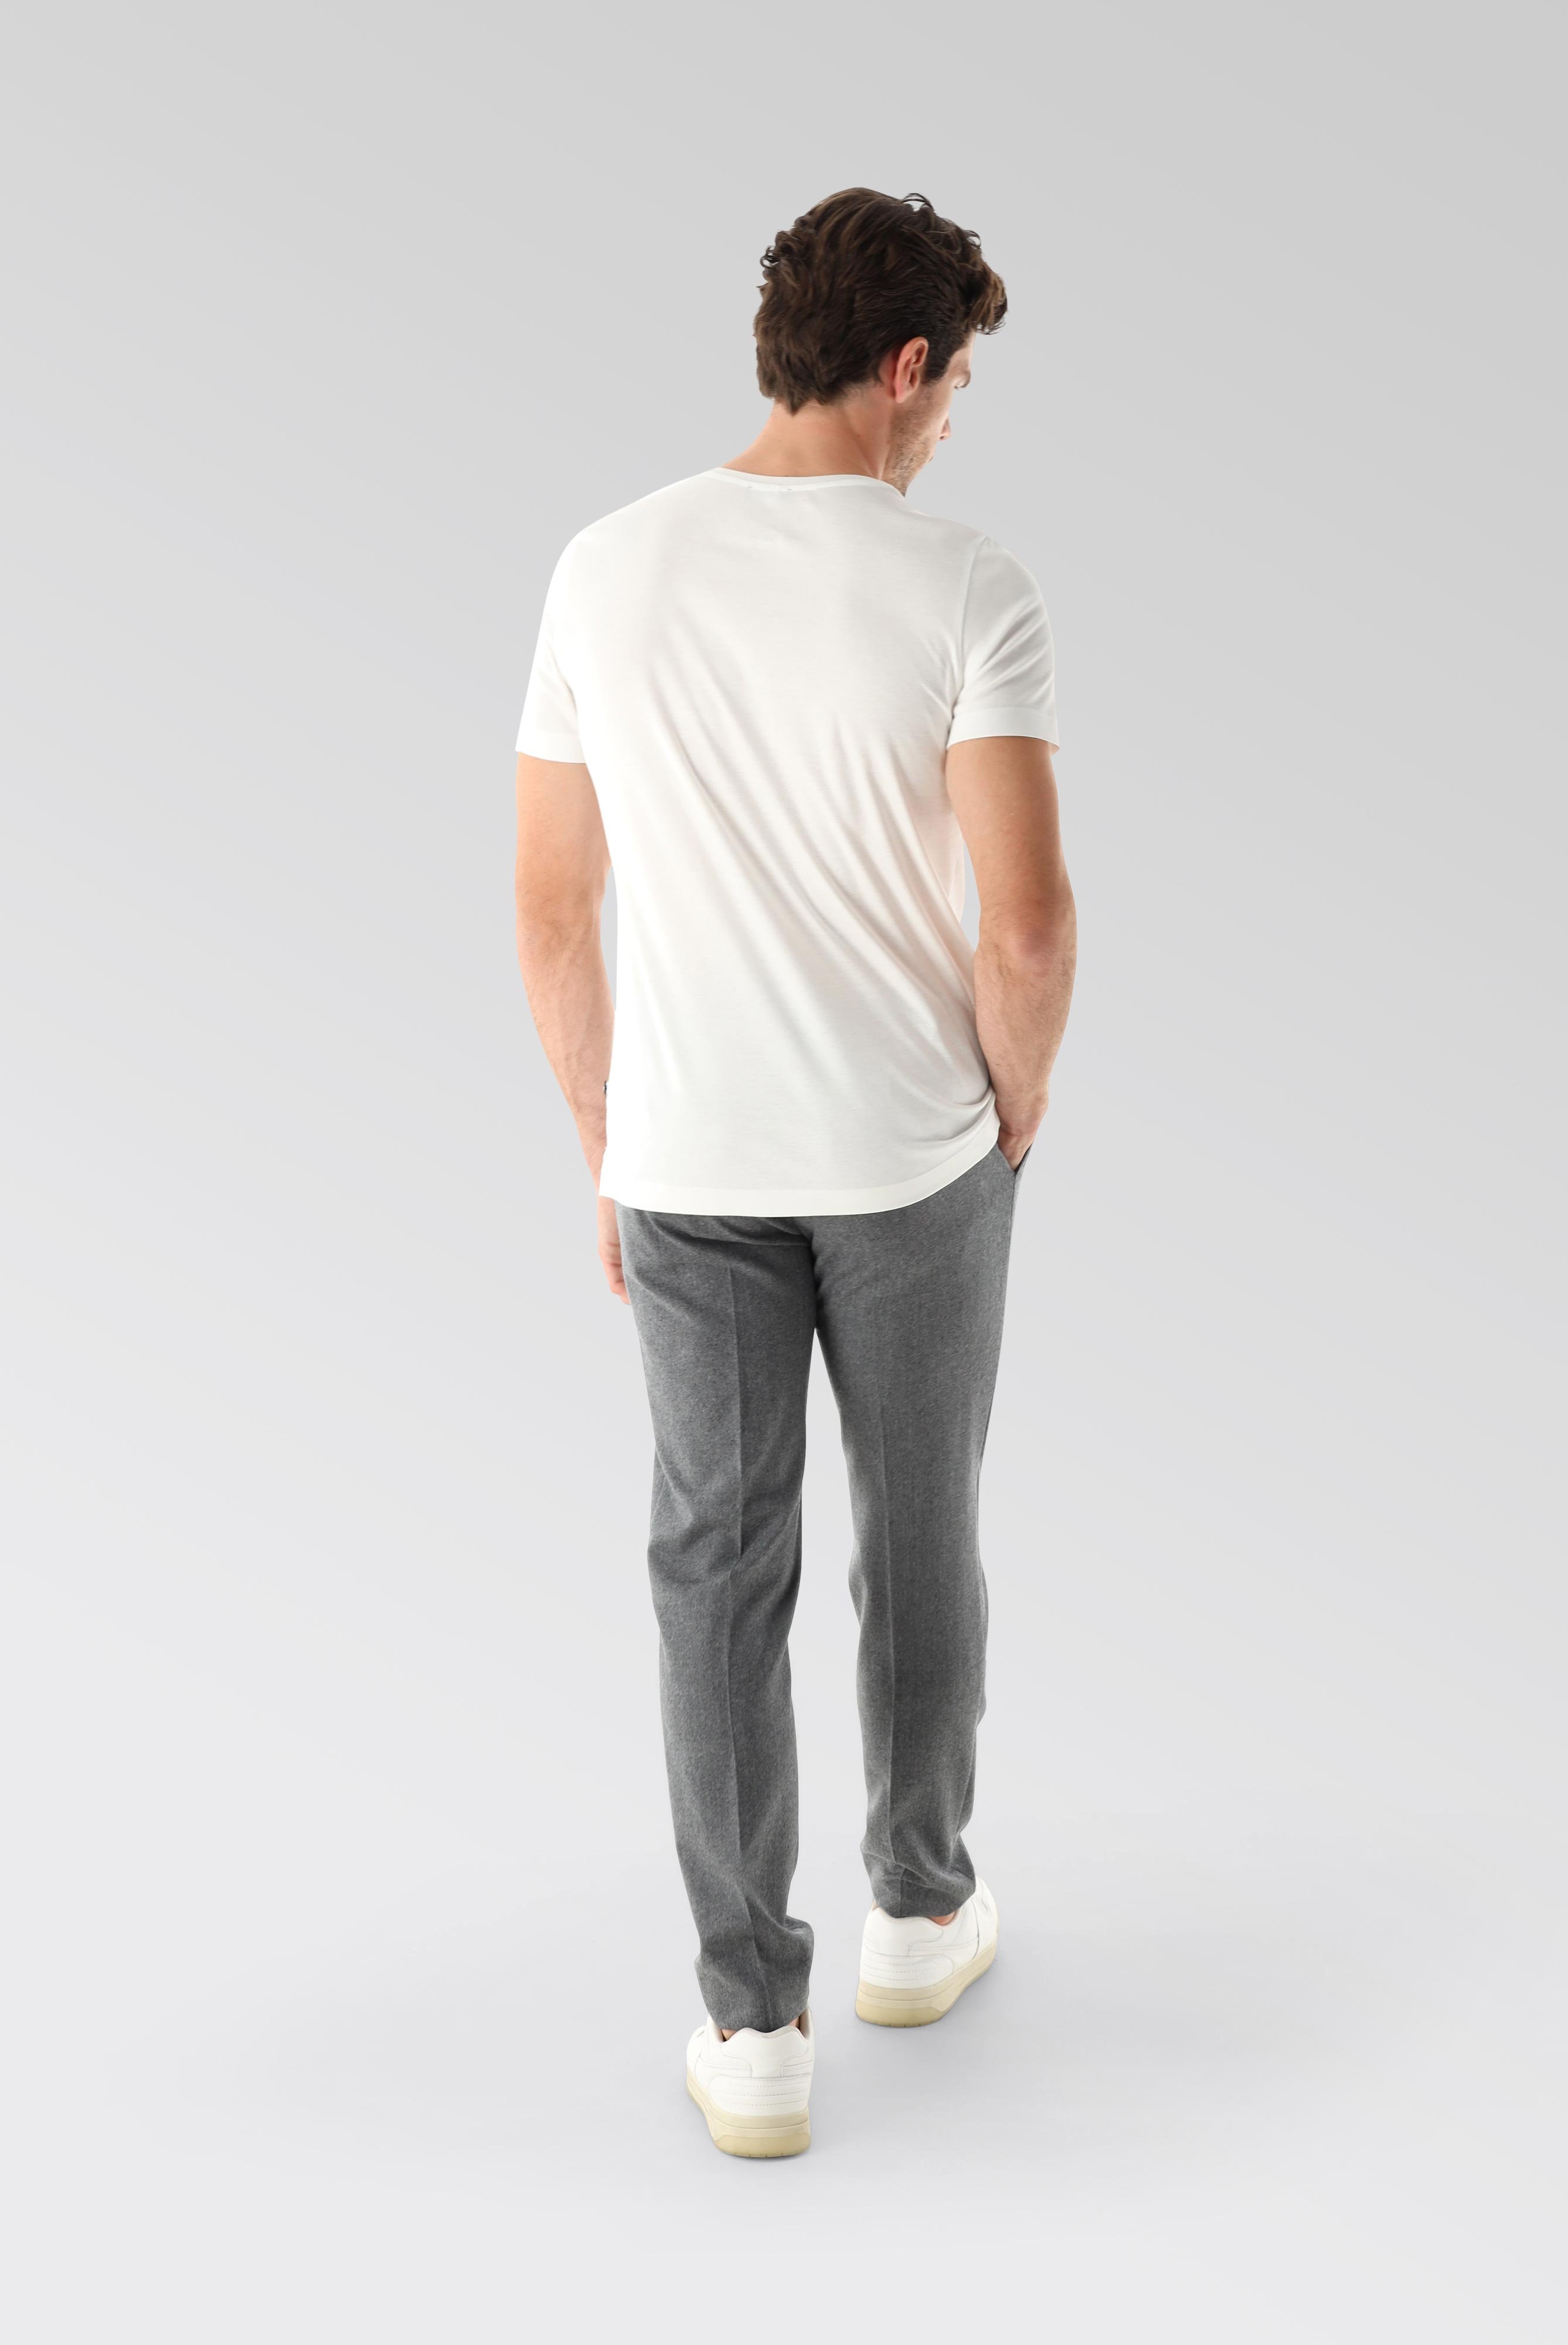 T-Shirts+V-Ausschnitt Jersey T-Shirt Slim Fit+20.1715.UX.180031.000.L